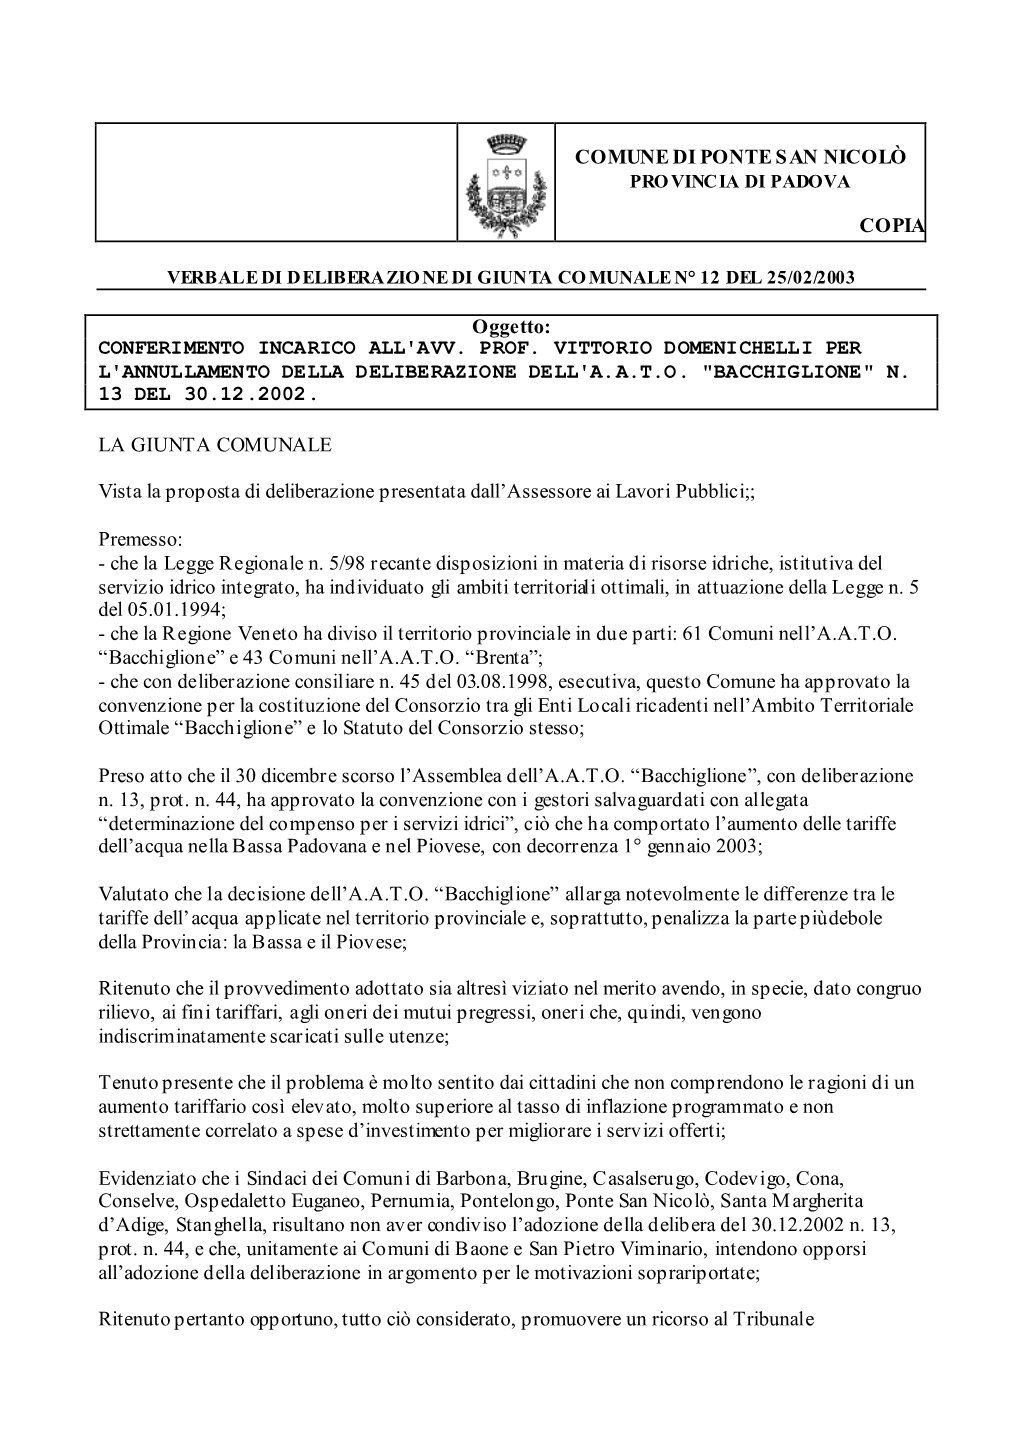 Conferimento Incarico All'avv. Prof. Vittorio Domenichelli Per L'annullamento Della Deliberazione Dell'a.A.T.O